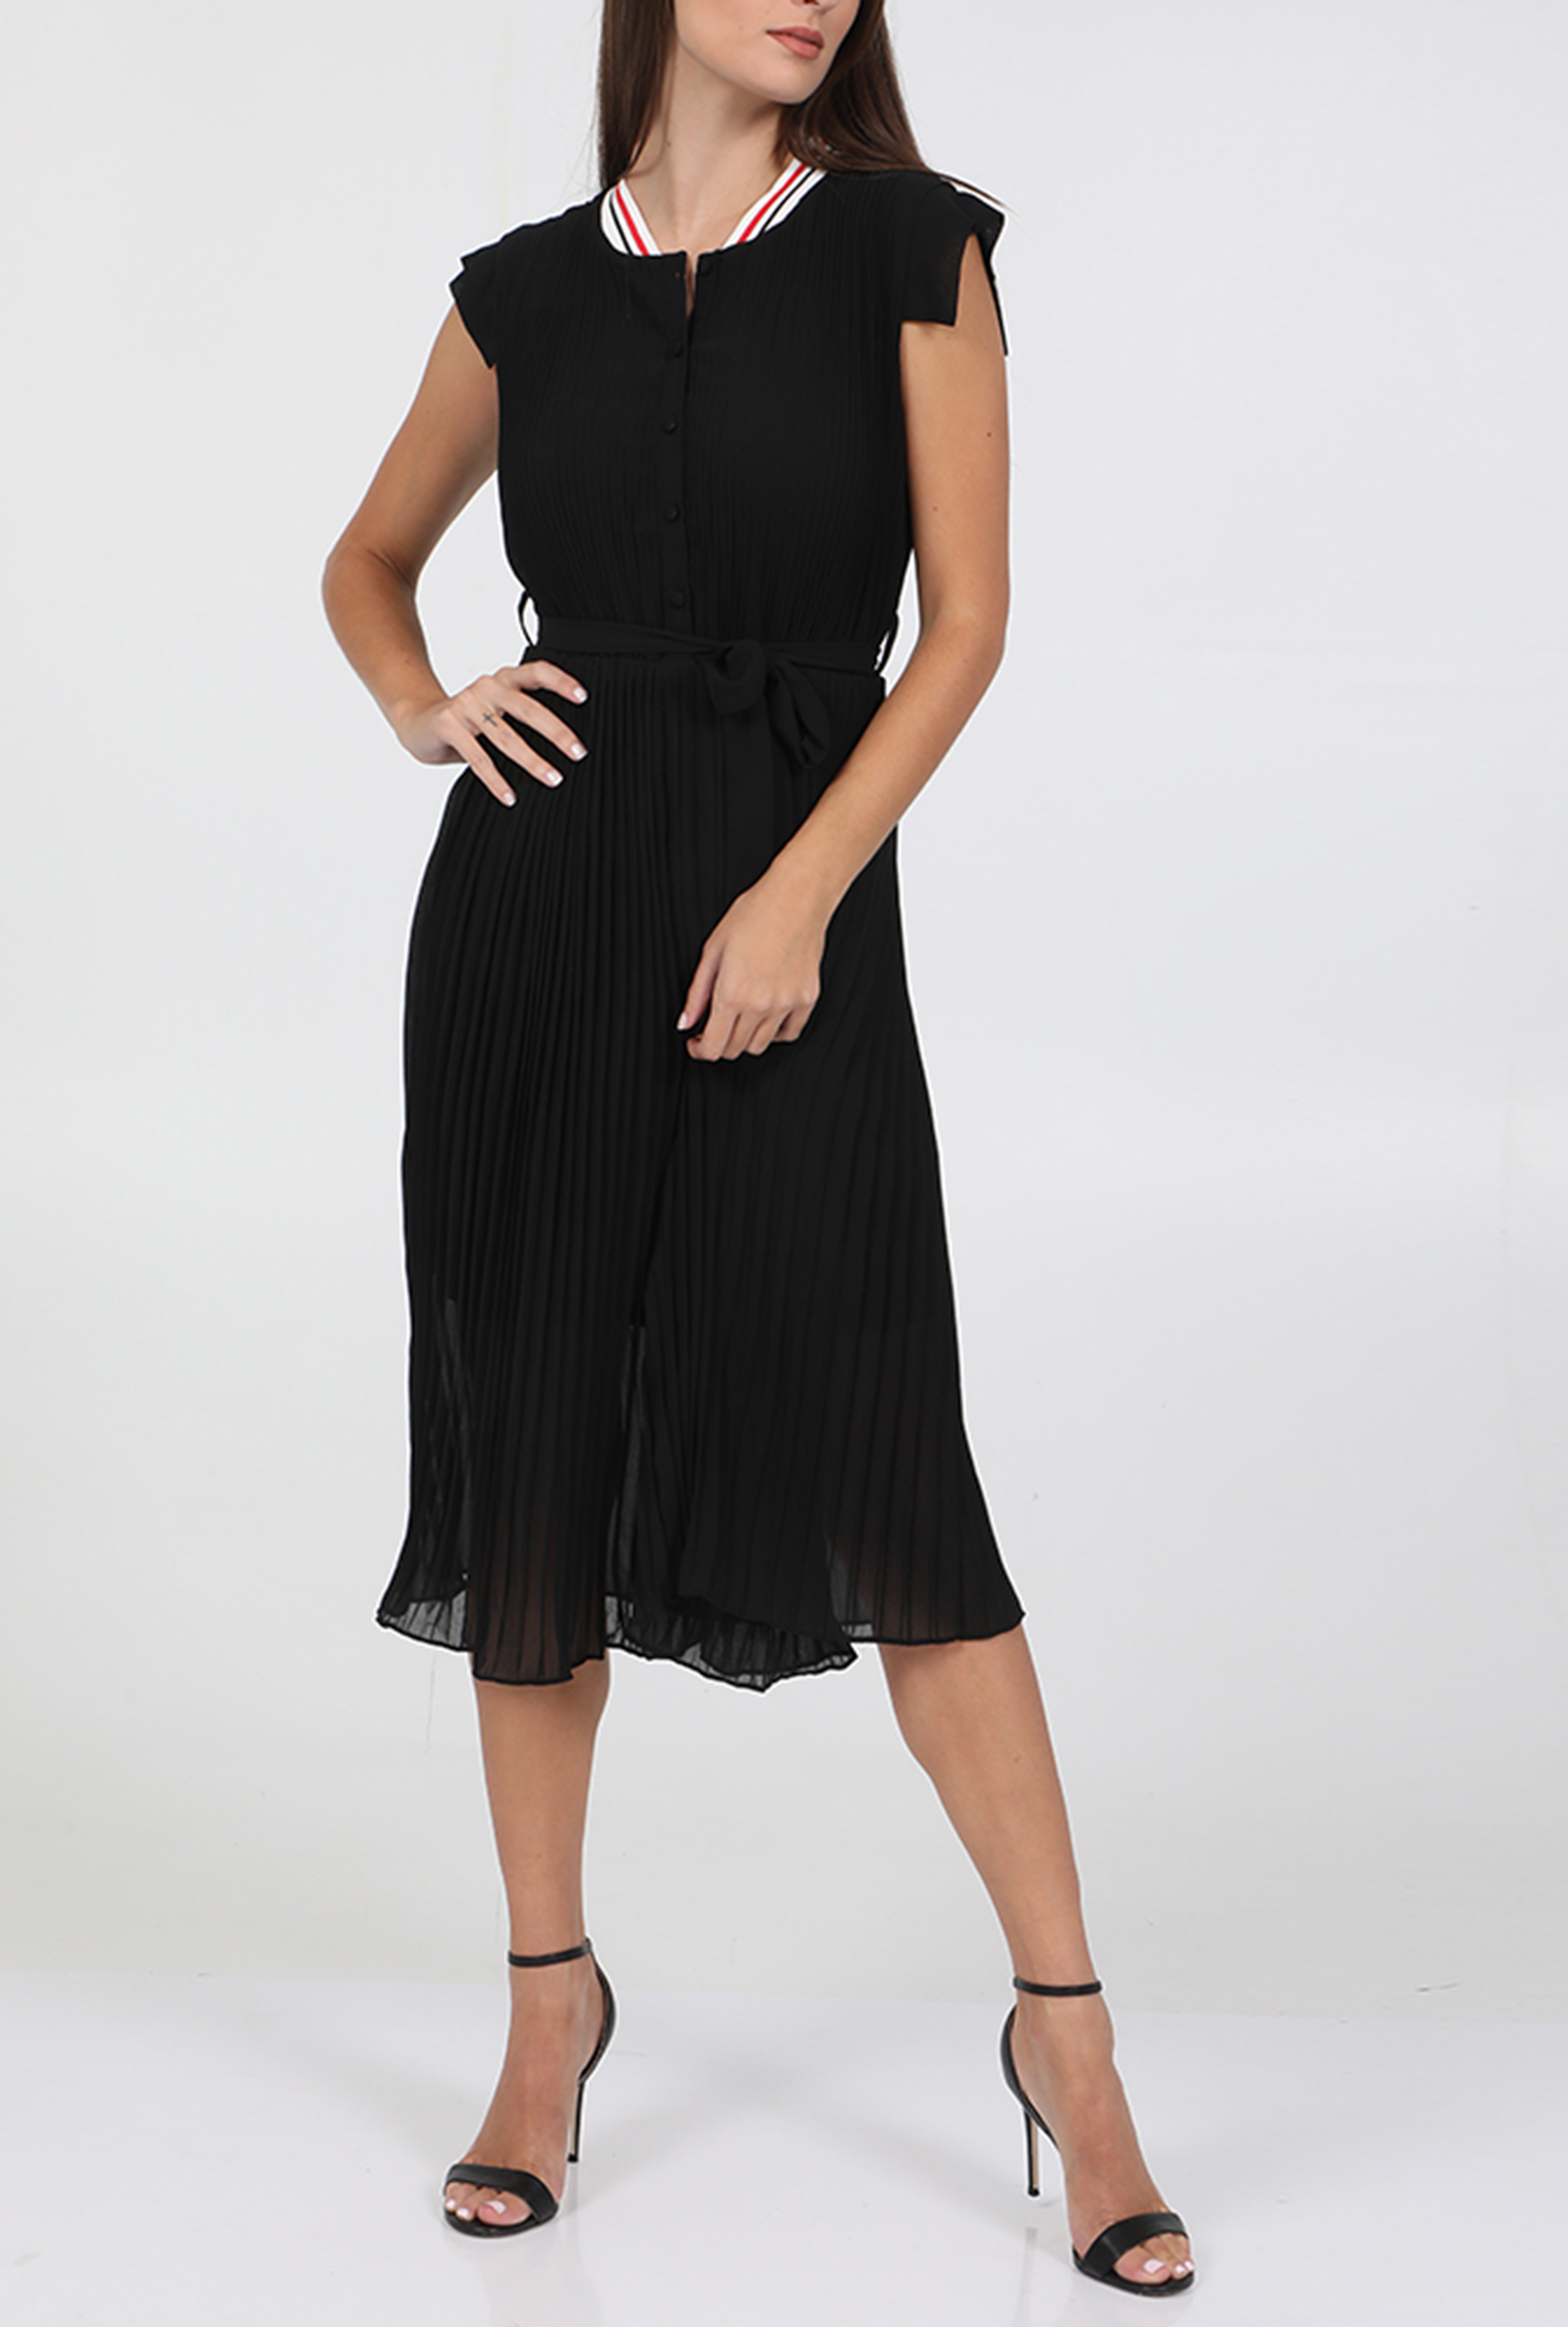 Γυναικεία/Ρούχα/Φόρεματα/Μέχρι το γόνατο LILI SIDONIO - Γυναικείο μίντι πλισέ φόρεμα LILI SIDONIO μαύρο